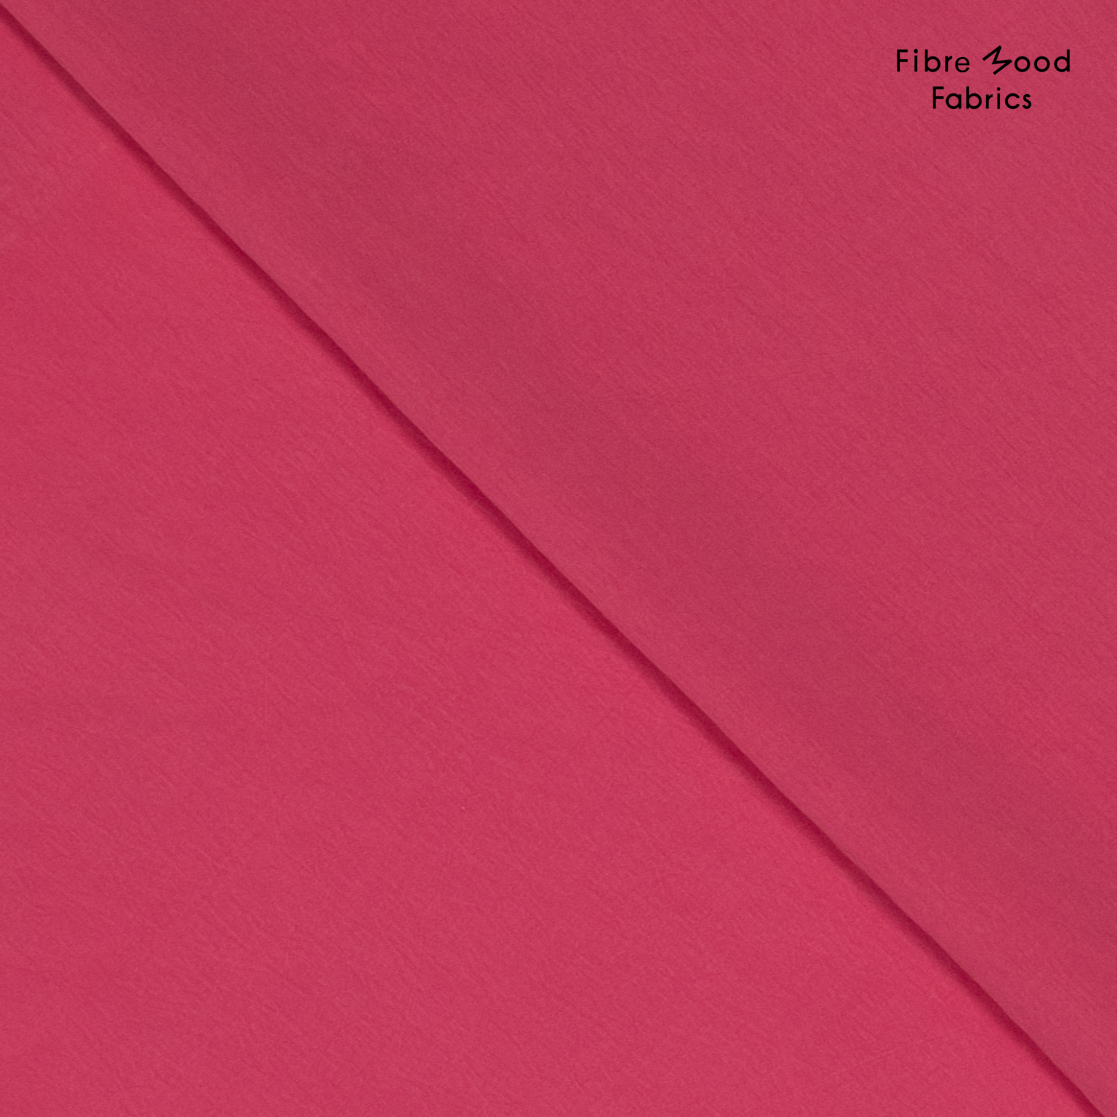 Fibre Mood "Quilla", Modalstoff, pink. Art. FM792401